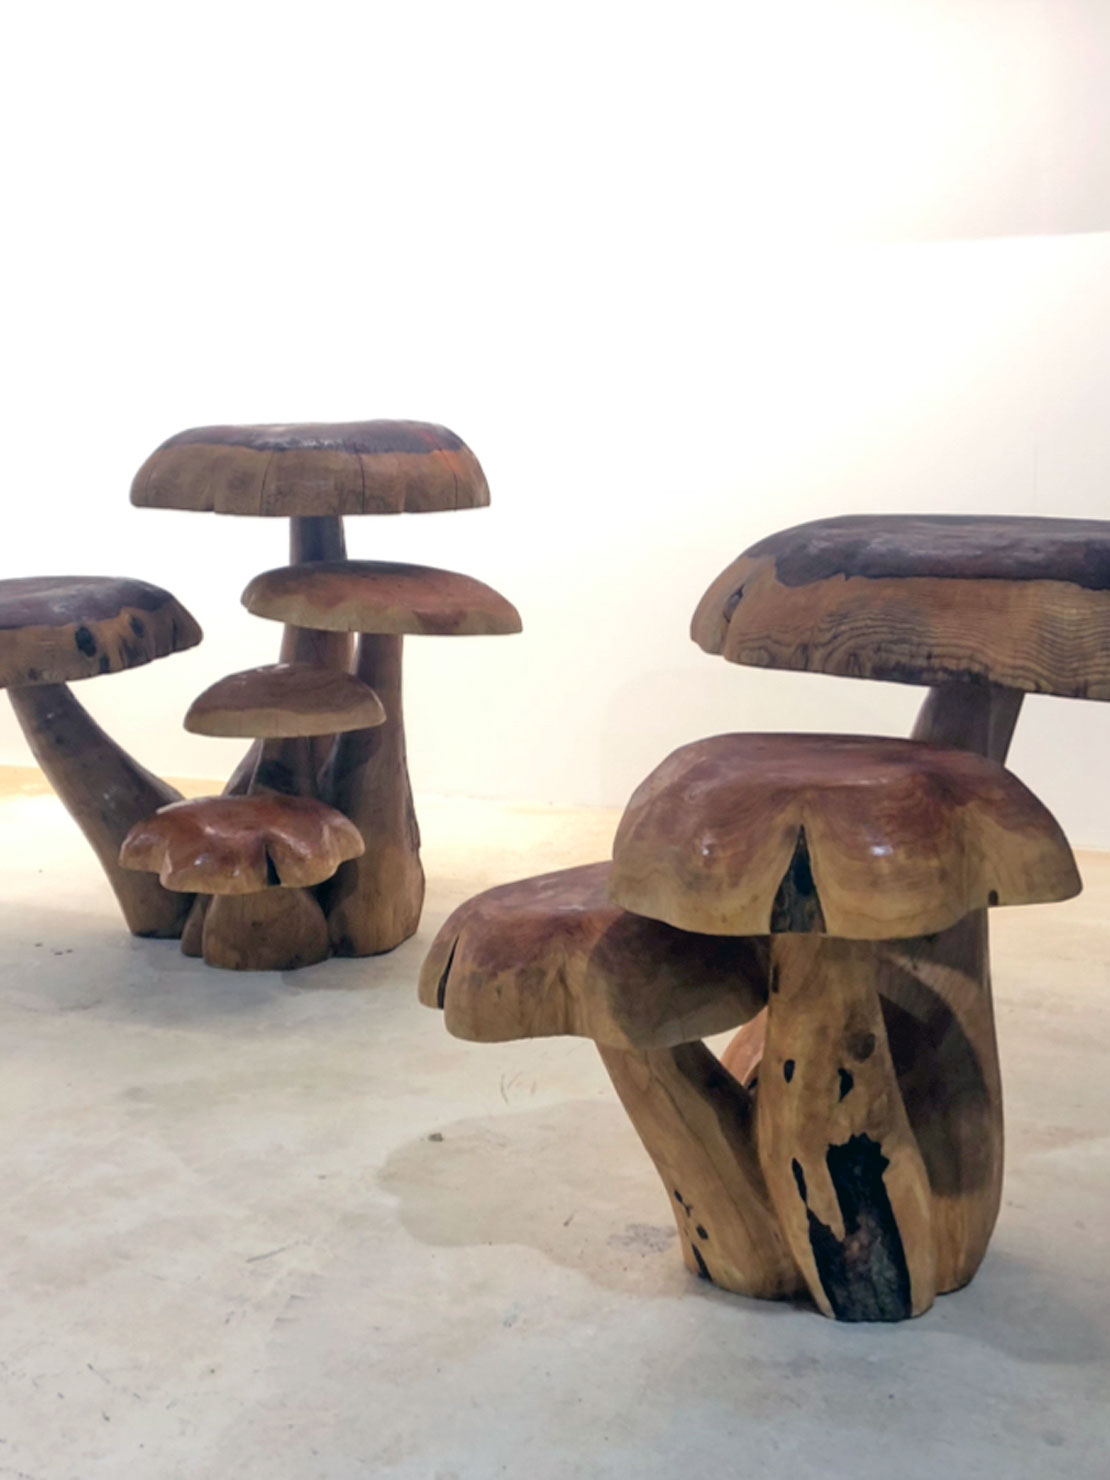 Giant Mushroom carvings